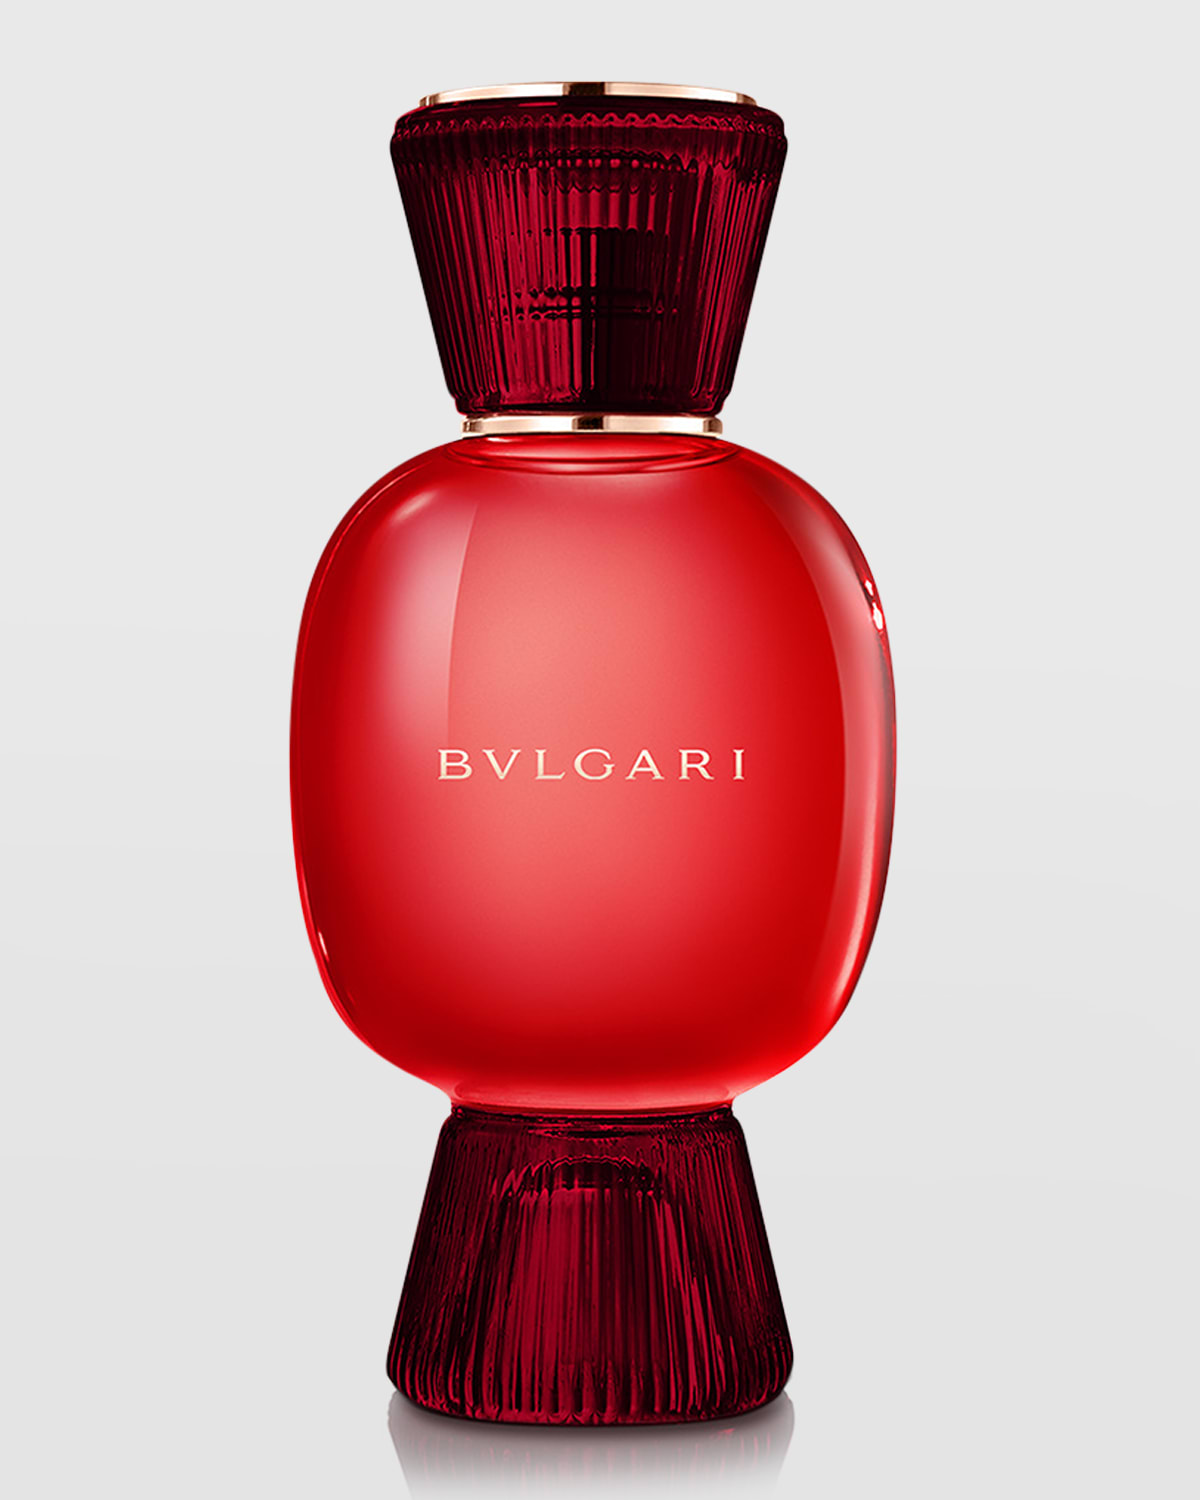 BVLGARI Riva Solare Eau de Parfum, 3.4 oz. | Neiman Marcus